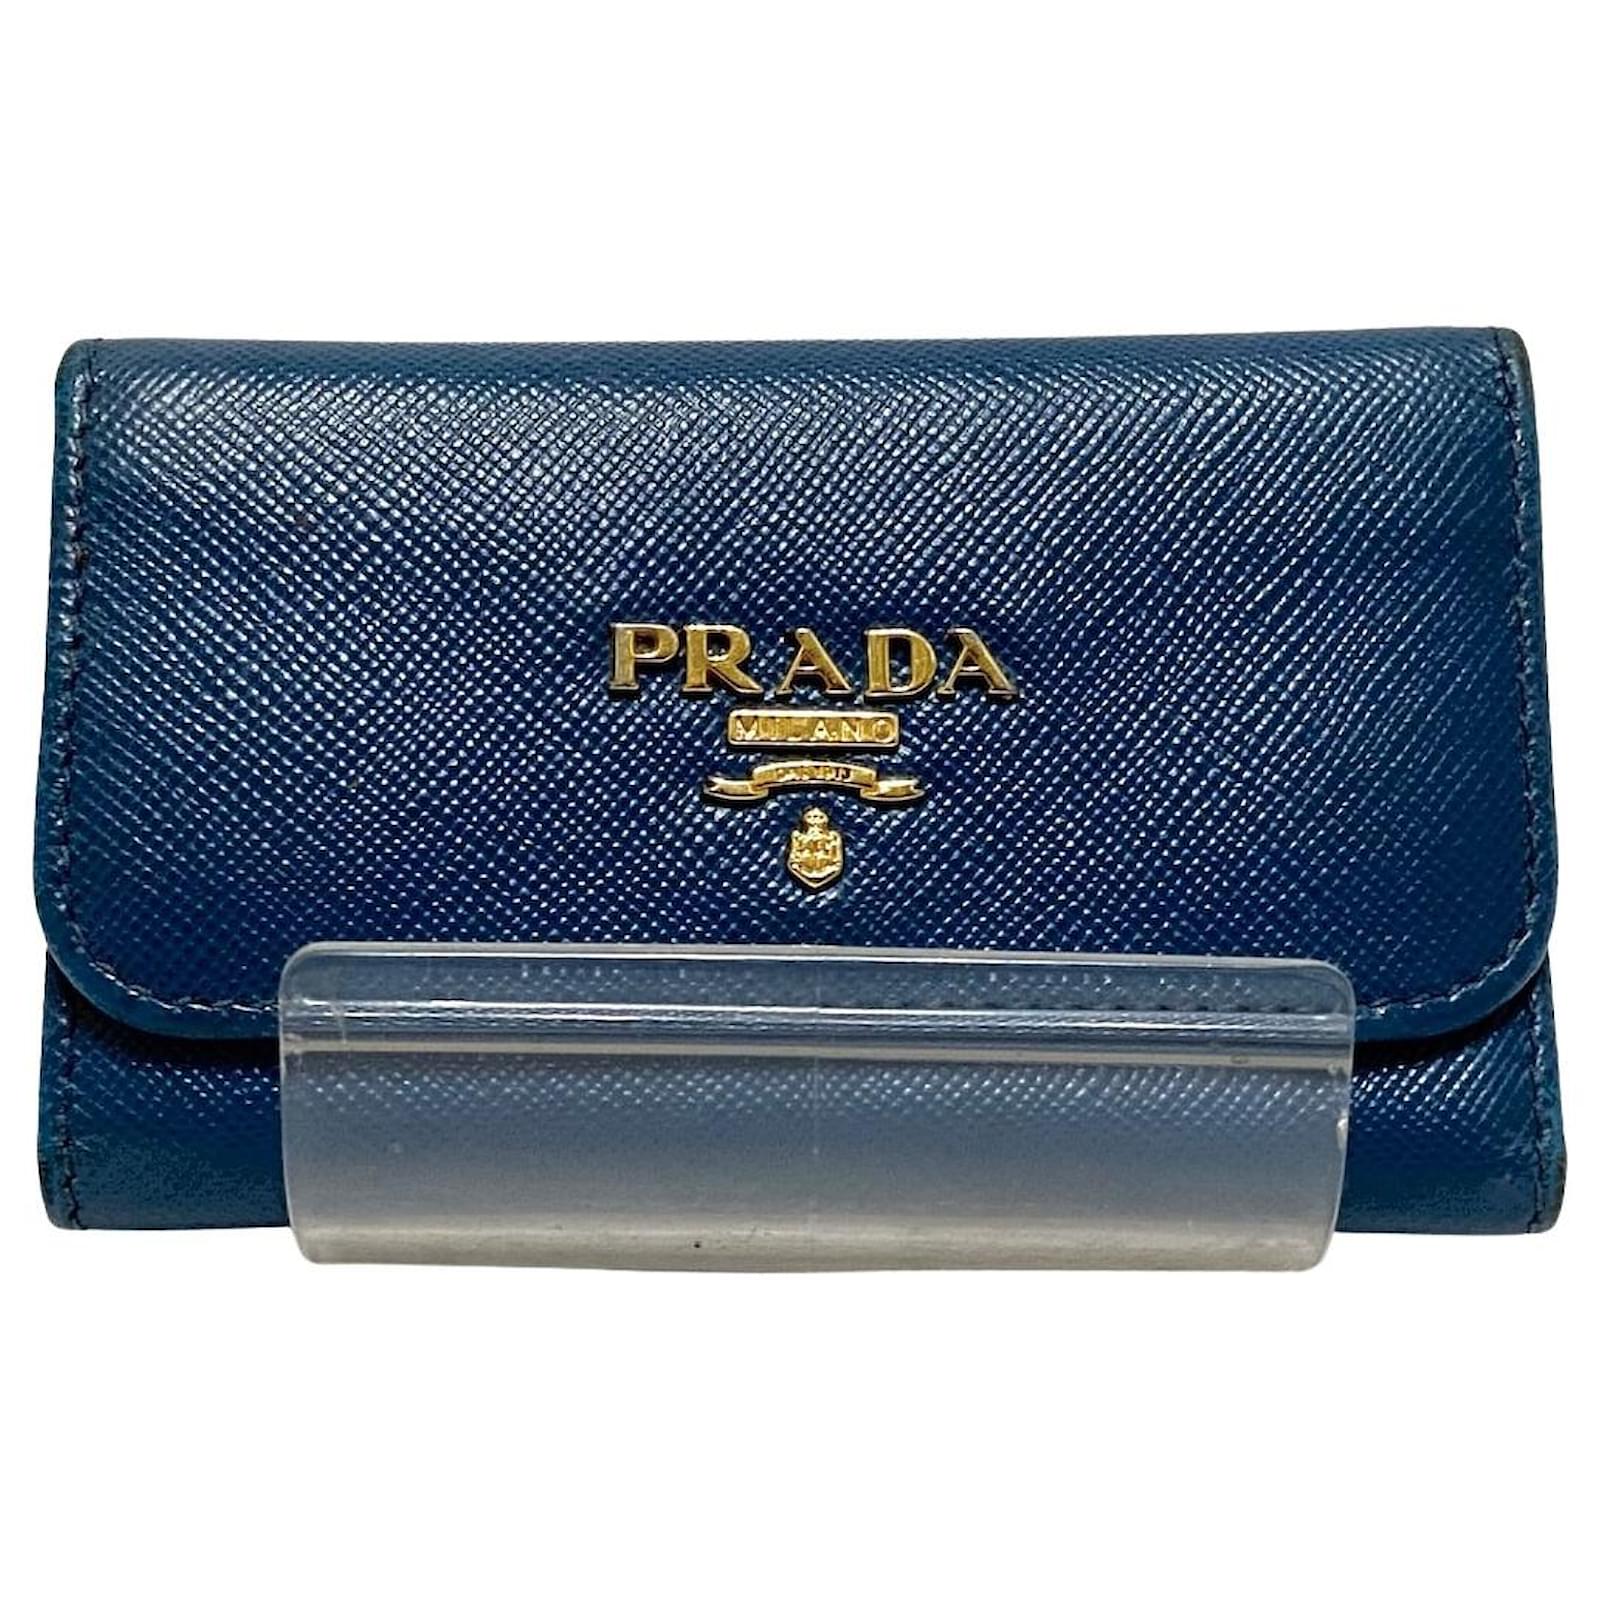 Prada Handbags - Buy Prada Handbags online in India